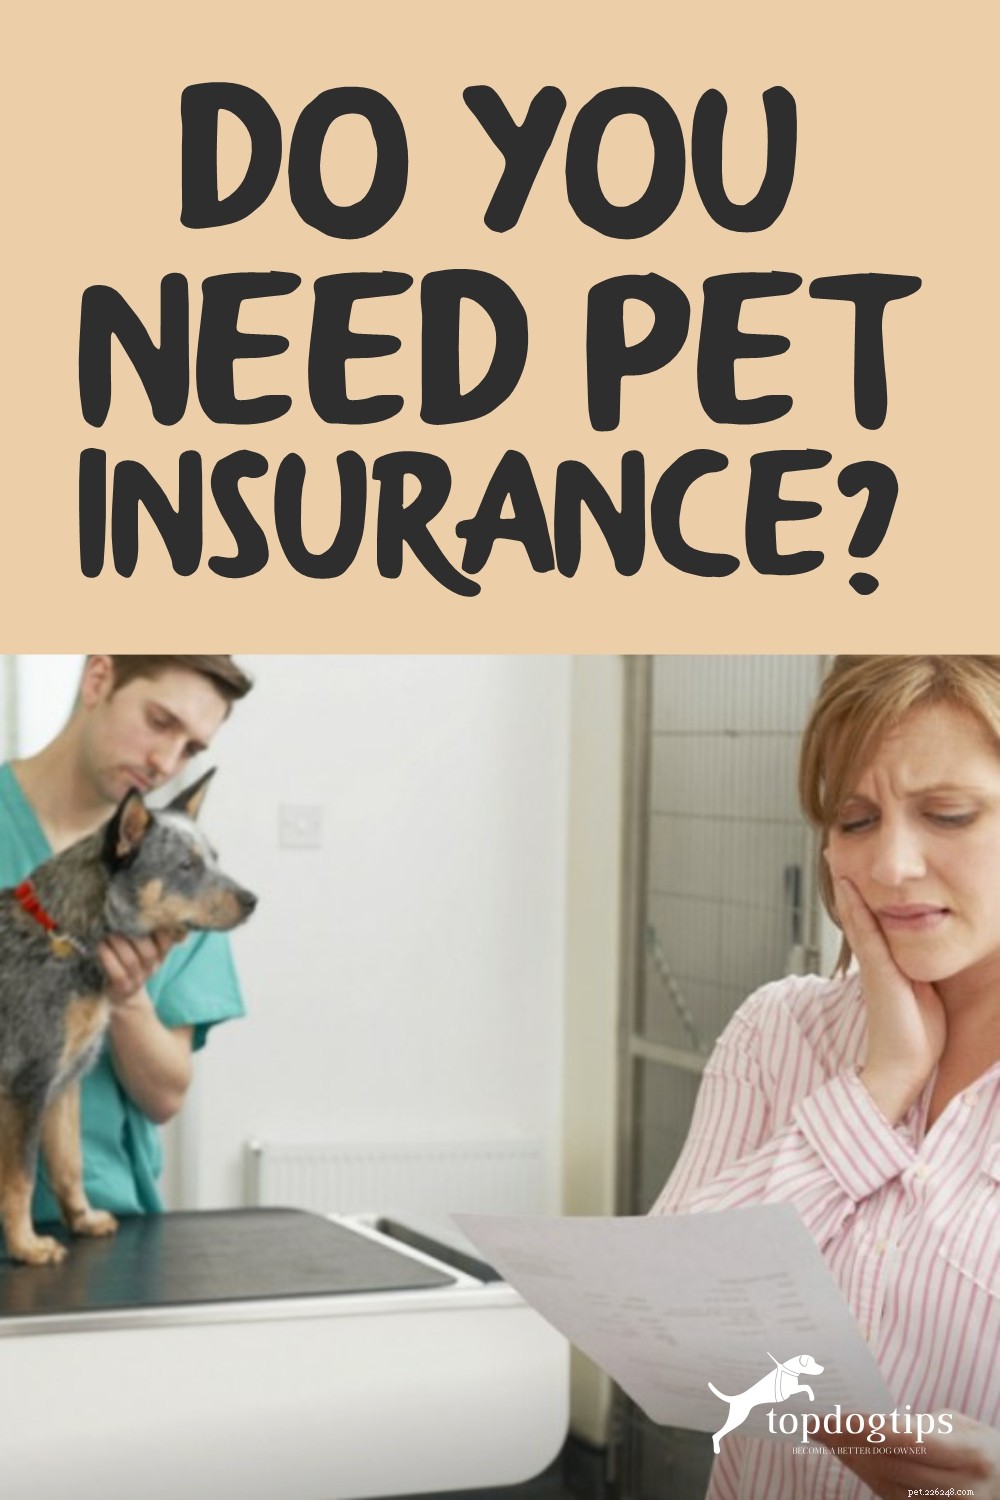 Hai bisogno di un assicurazione per animali domestici?